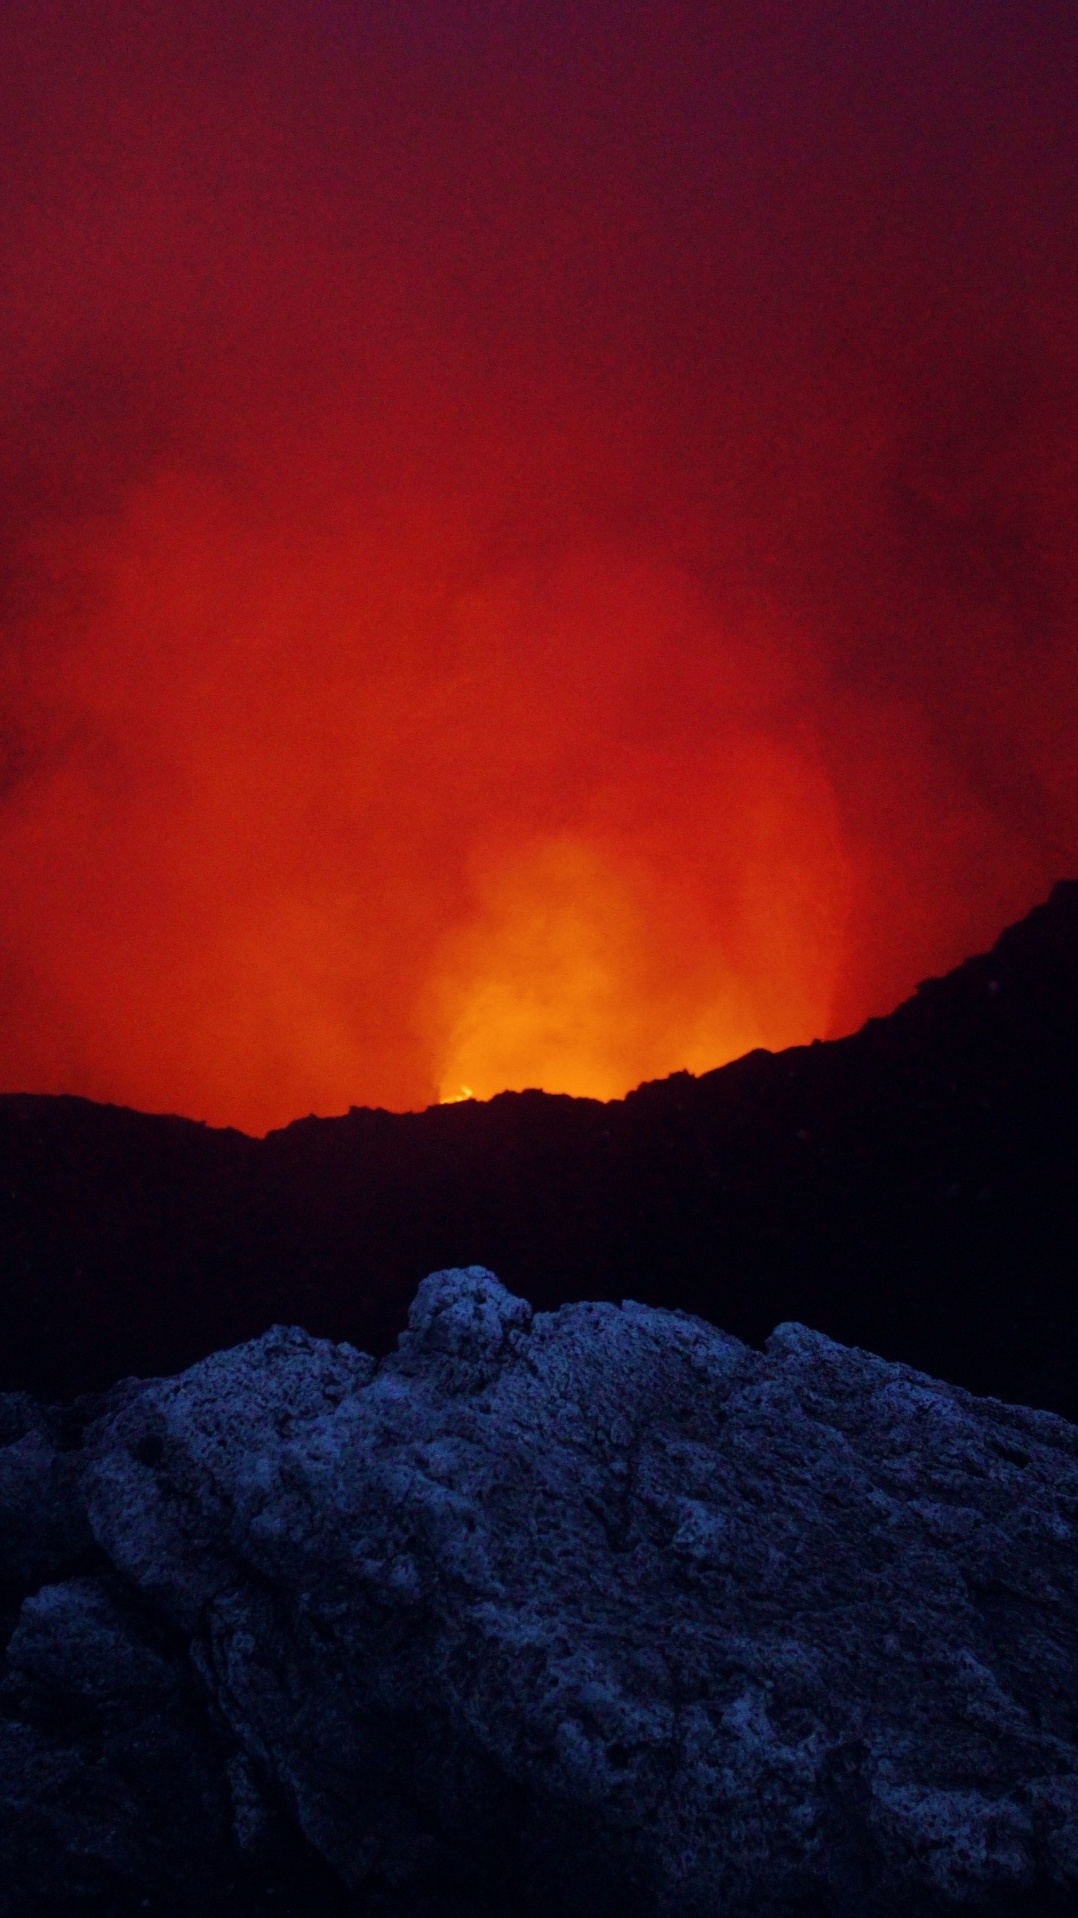 типы вулканических извержений, вулкан, вулкан масая, рок, красный цвет